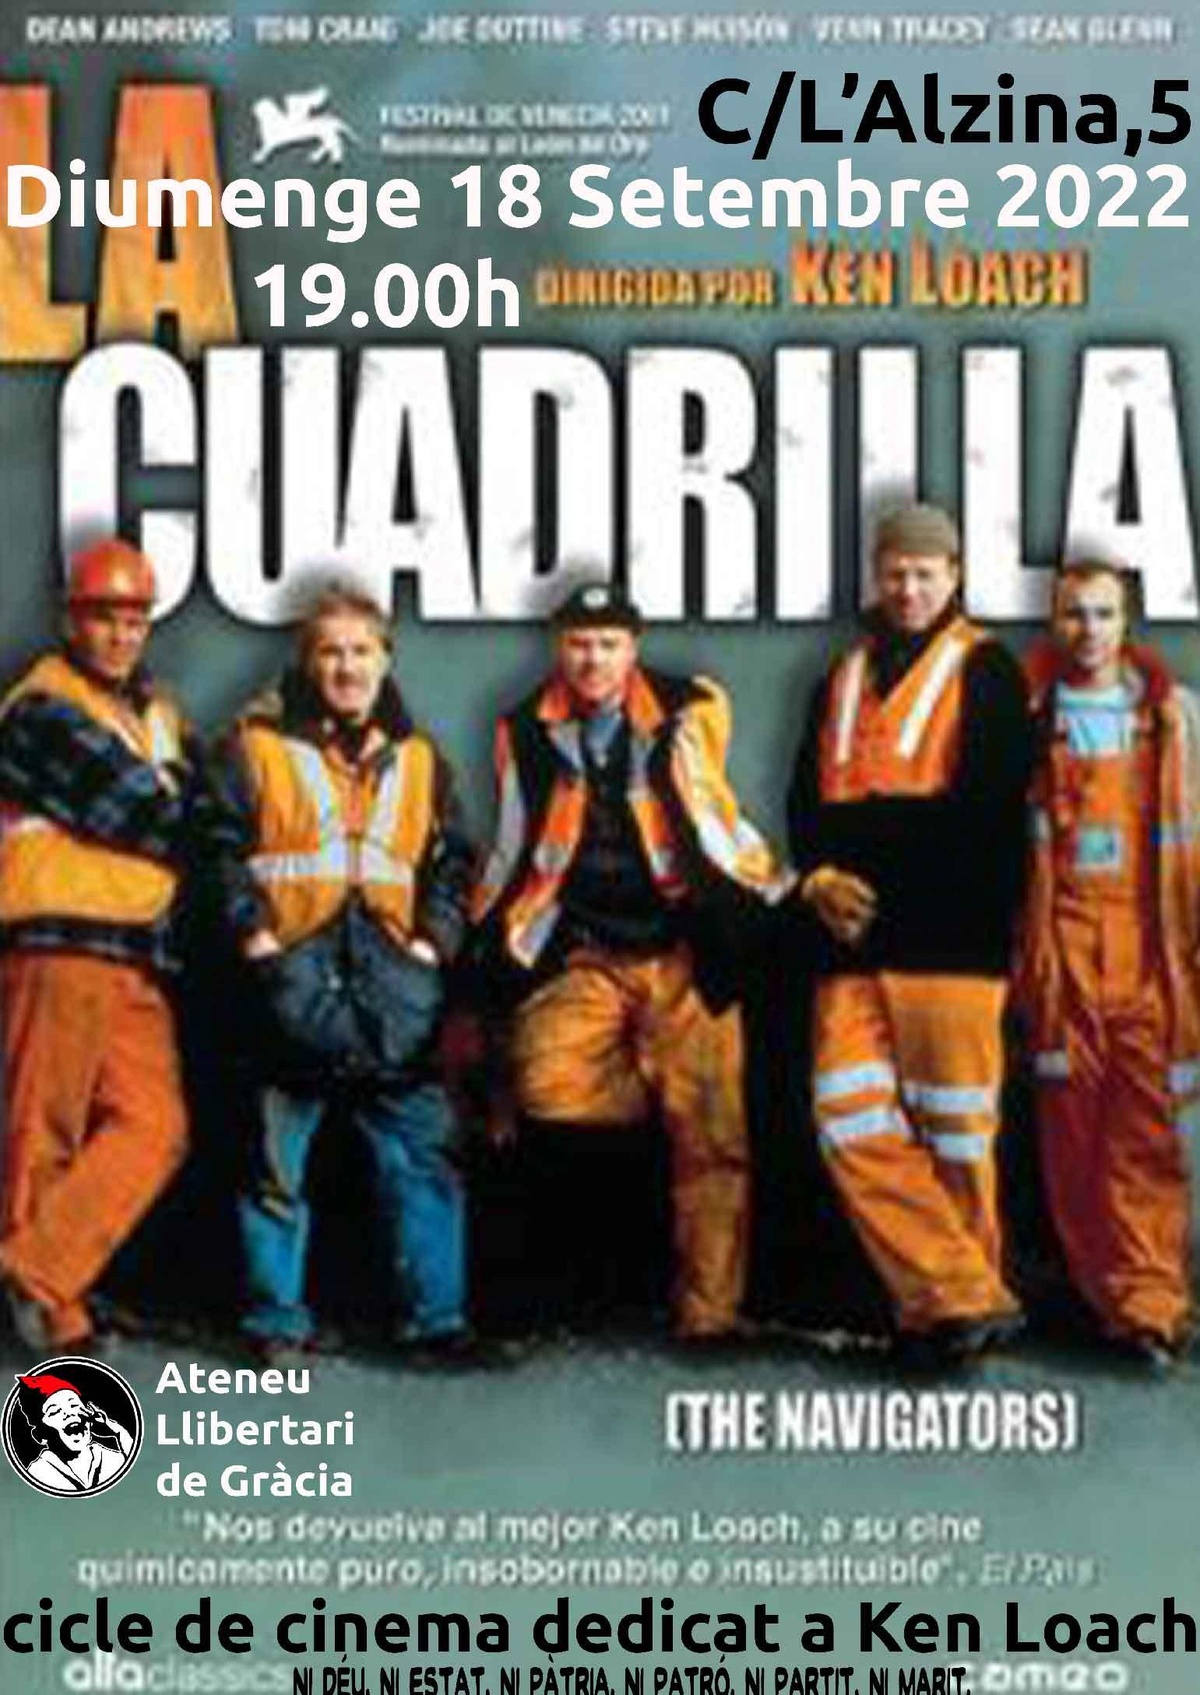 Cinema "La Cuadrilla"